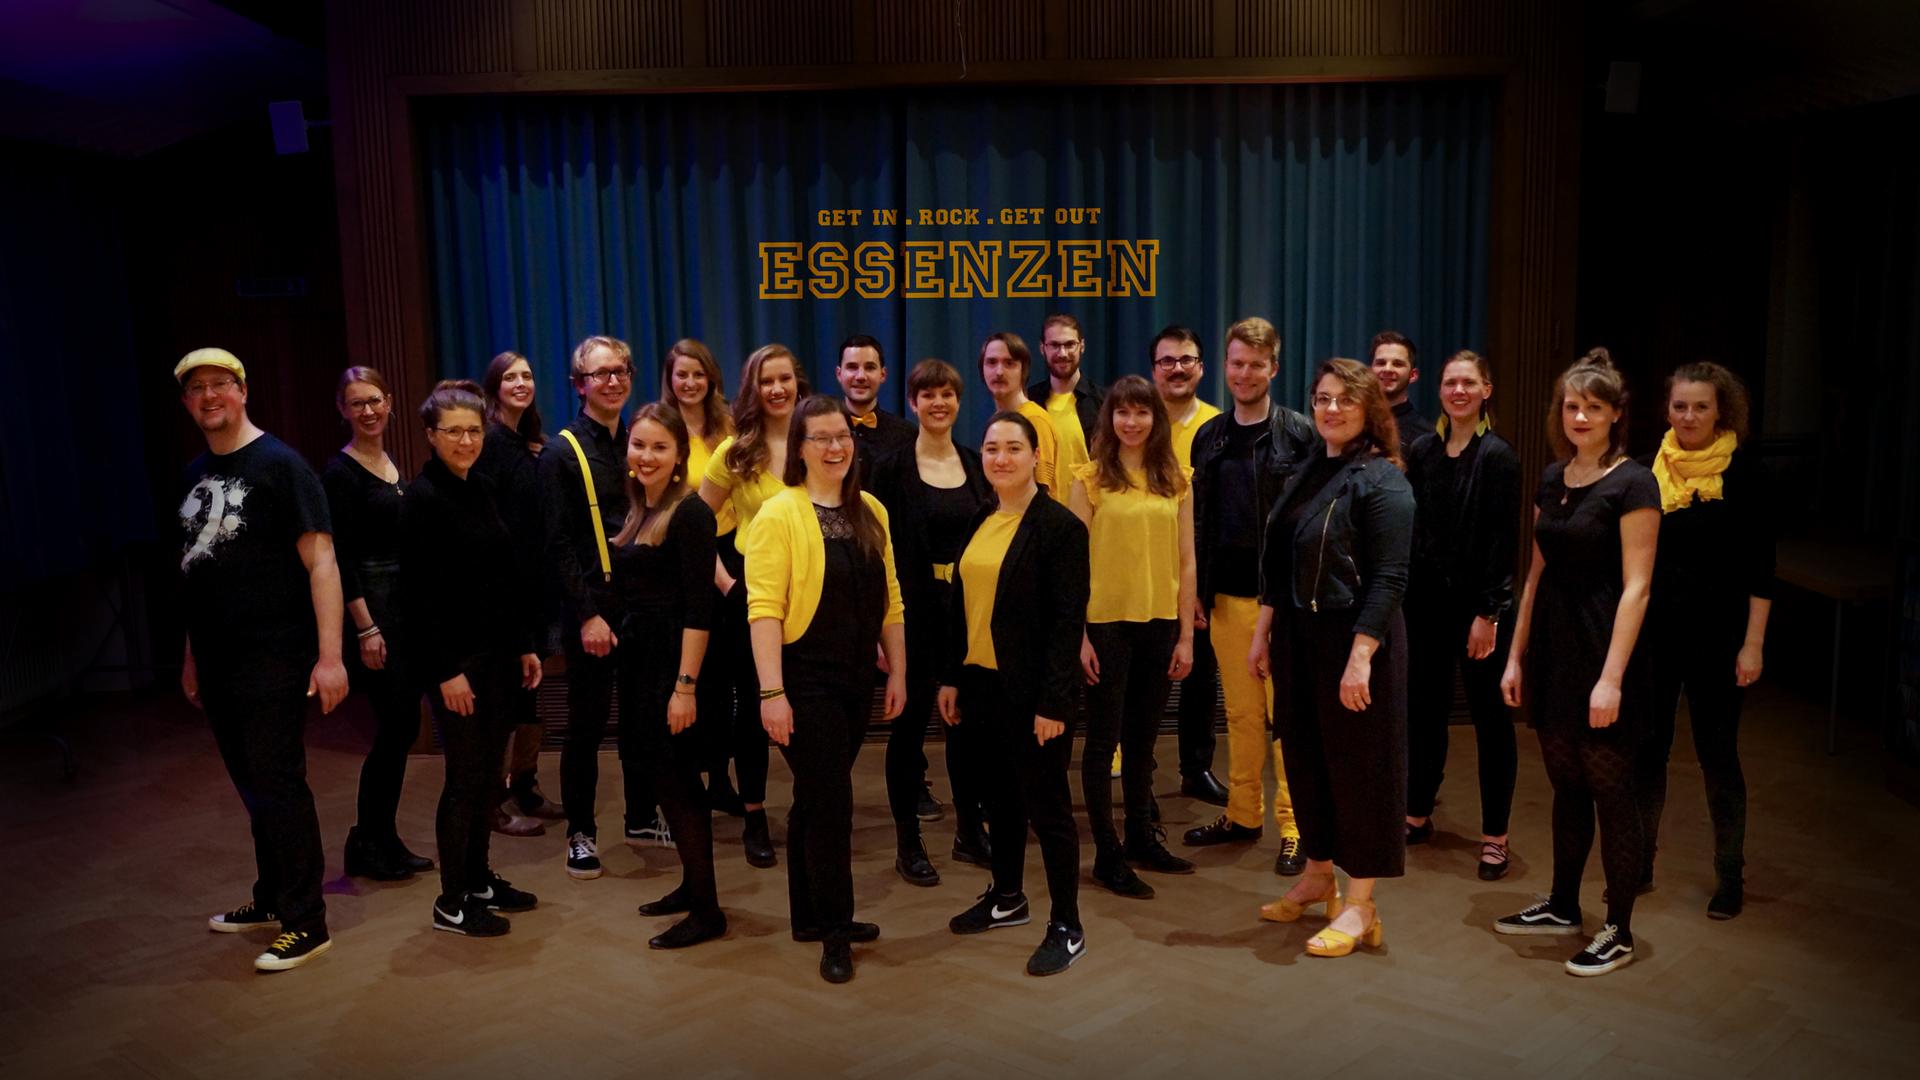 Gruppenbild des Chores vor einem dunklen Vorhang. Die Sängerinnen und Sänger tragen dunkle Chorkleidung und zum Teil gelbe Oberteile.